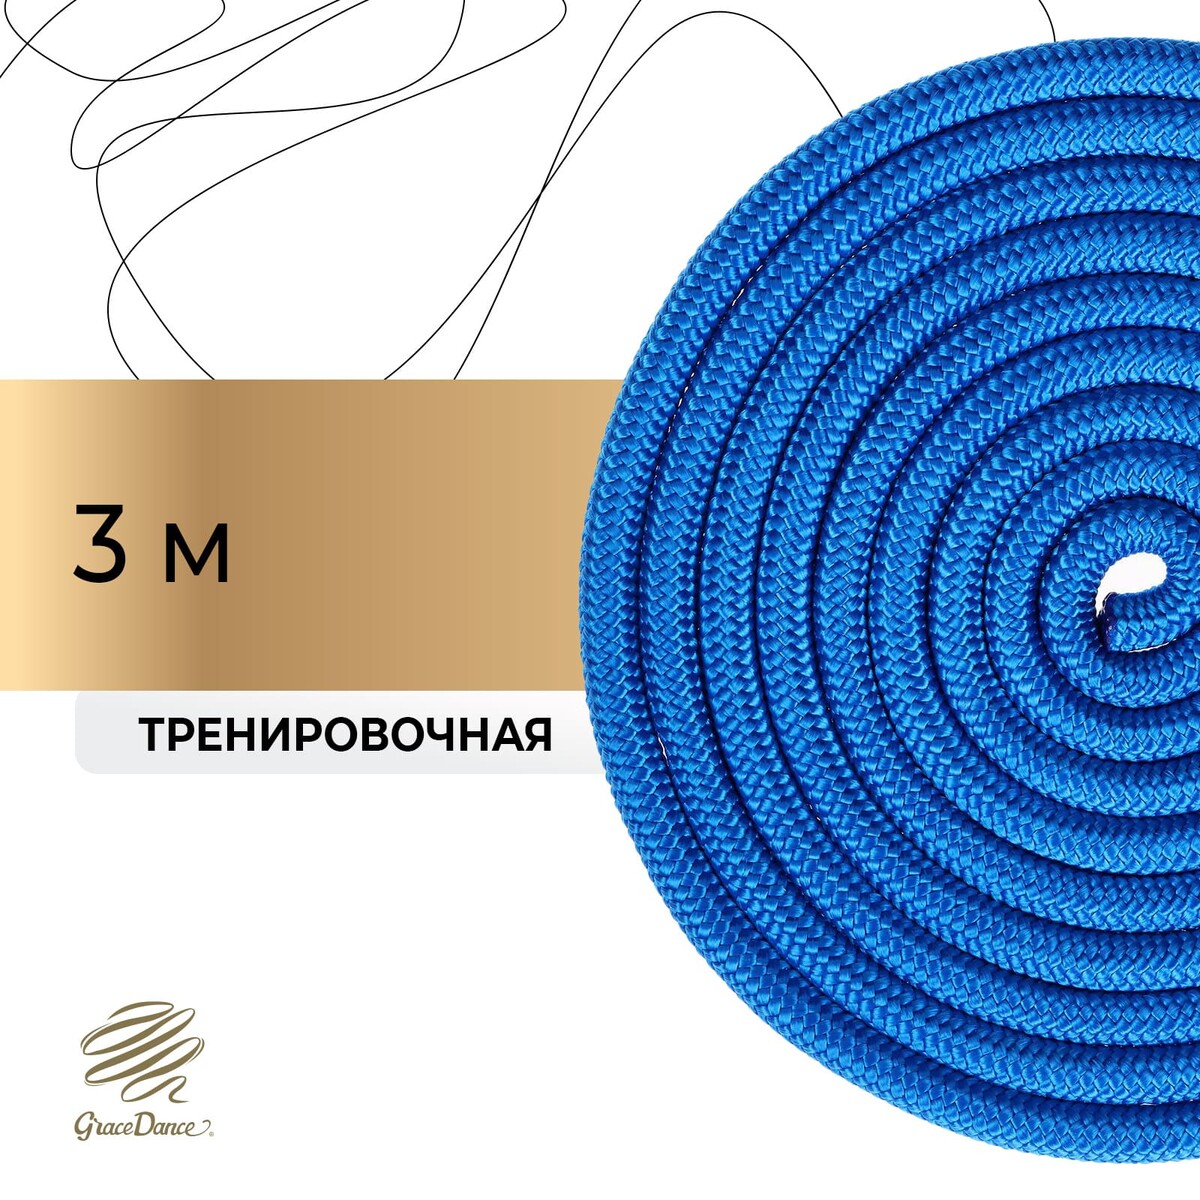 Скакалка для художественной гимнастики grace dance, 3 м, цвет синий помост для художественной гимнастики gymprof rhitmic с амортизаторами из ппэ вспененный пенополиэтилен 5х5 для ковра 6х6